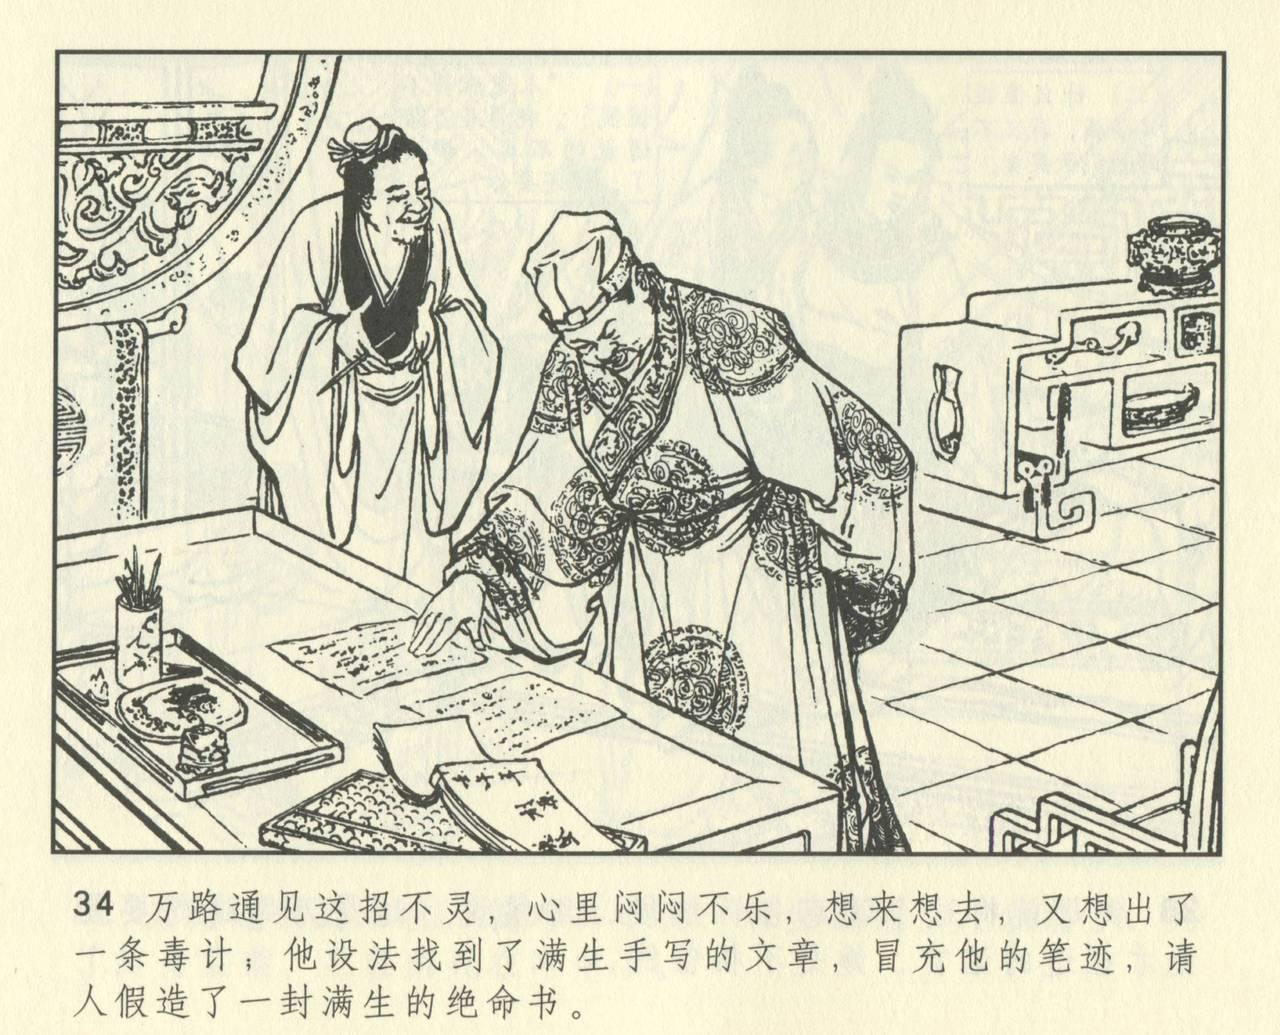 聊斋志异 张玮等绘 天津人民美术出版社 卷二十一 ~ 三十 445